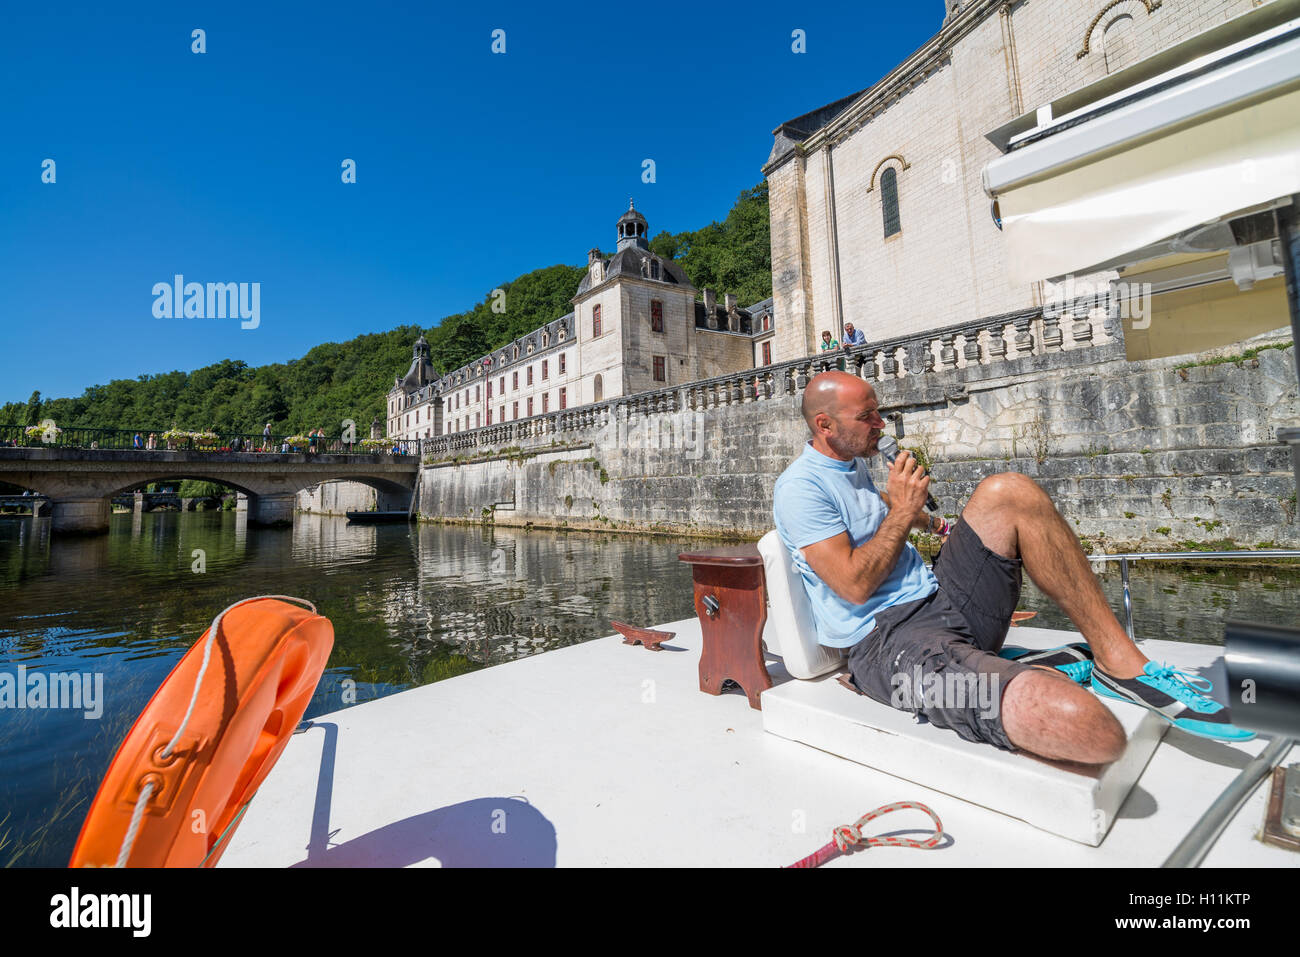 Boat trip on the river La Dronne in Brantome, Dordogne, Aquitaine, France. Stock Photo